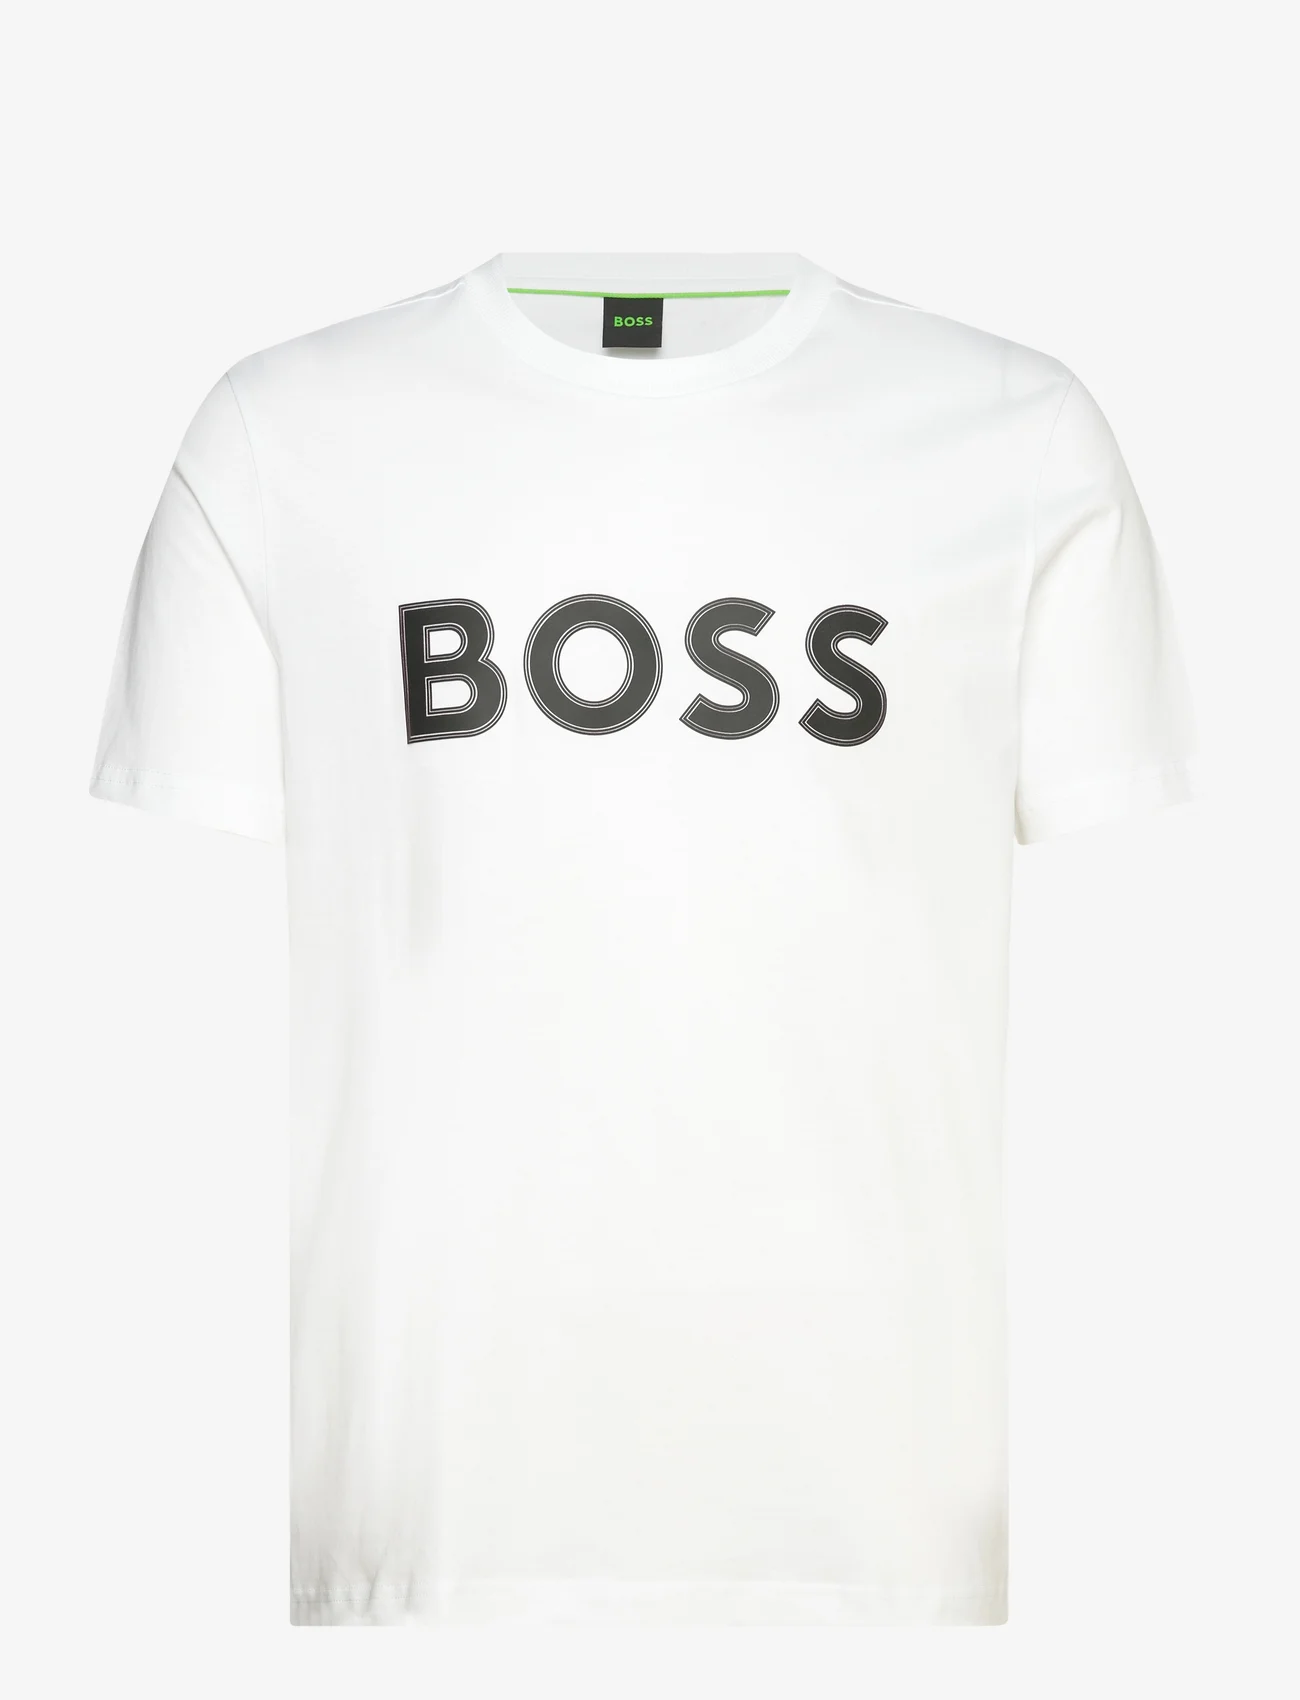 BOSS - Tee 1 - kortermede t-skjorter - white - 0